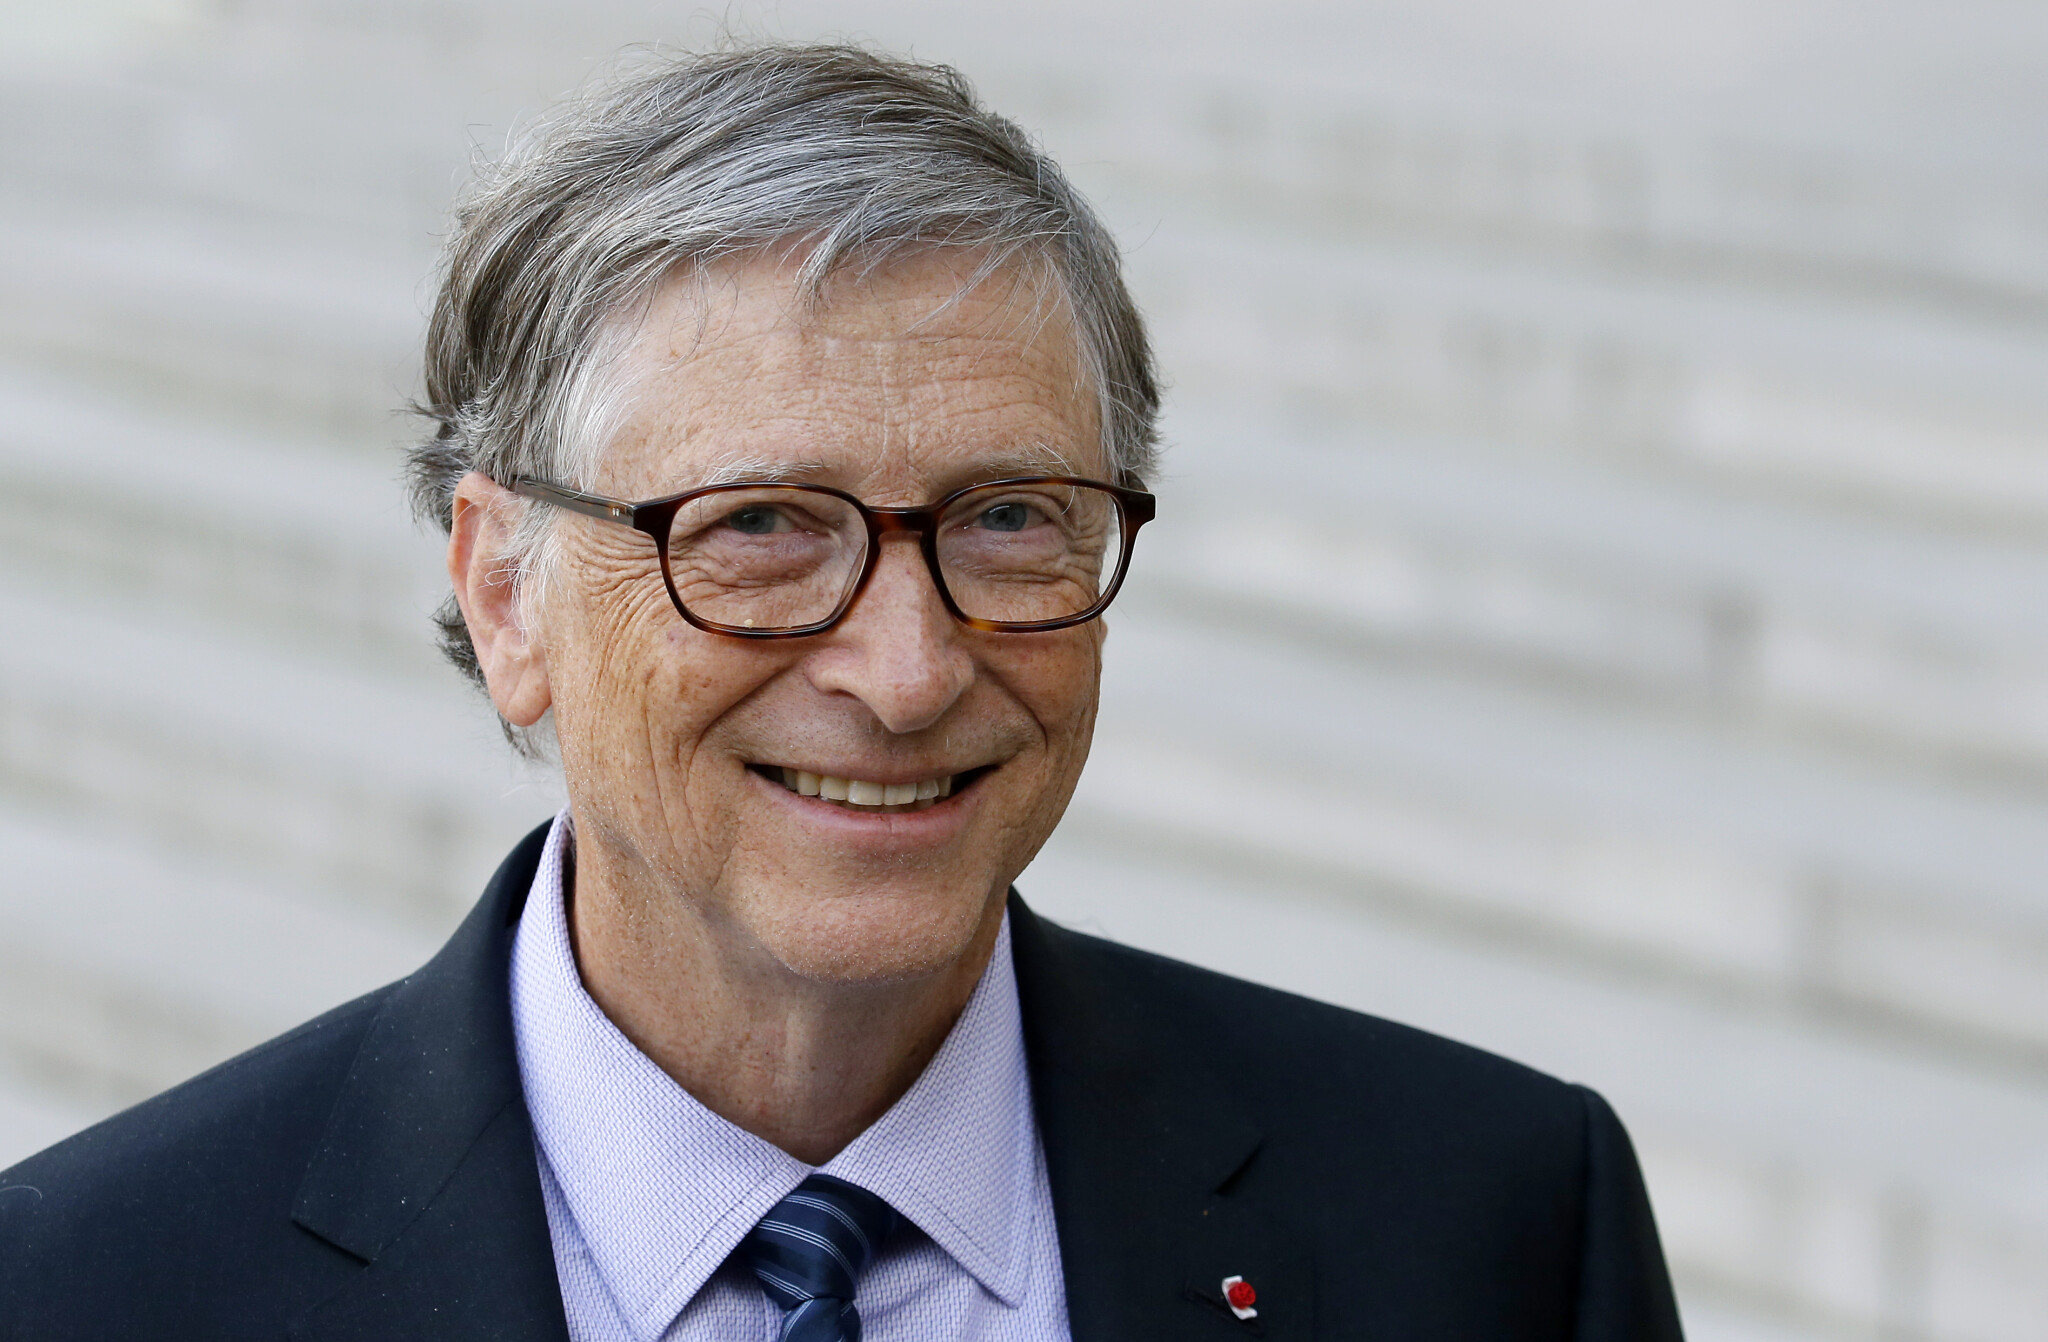 Společnost Billa Gatese ovládne řetězec luxusních hotelů Four Seasons